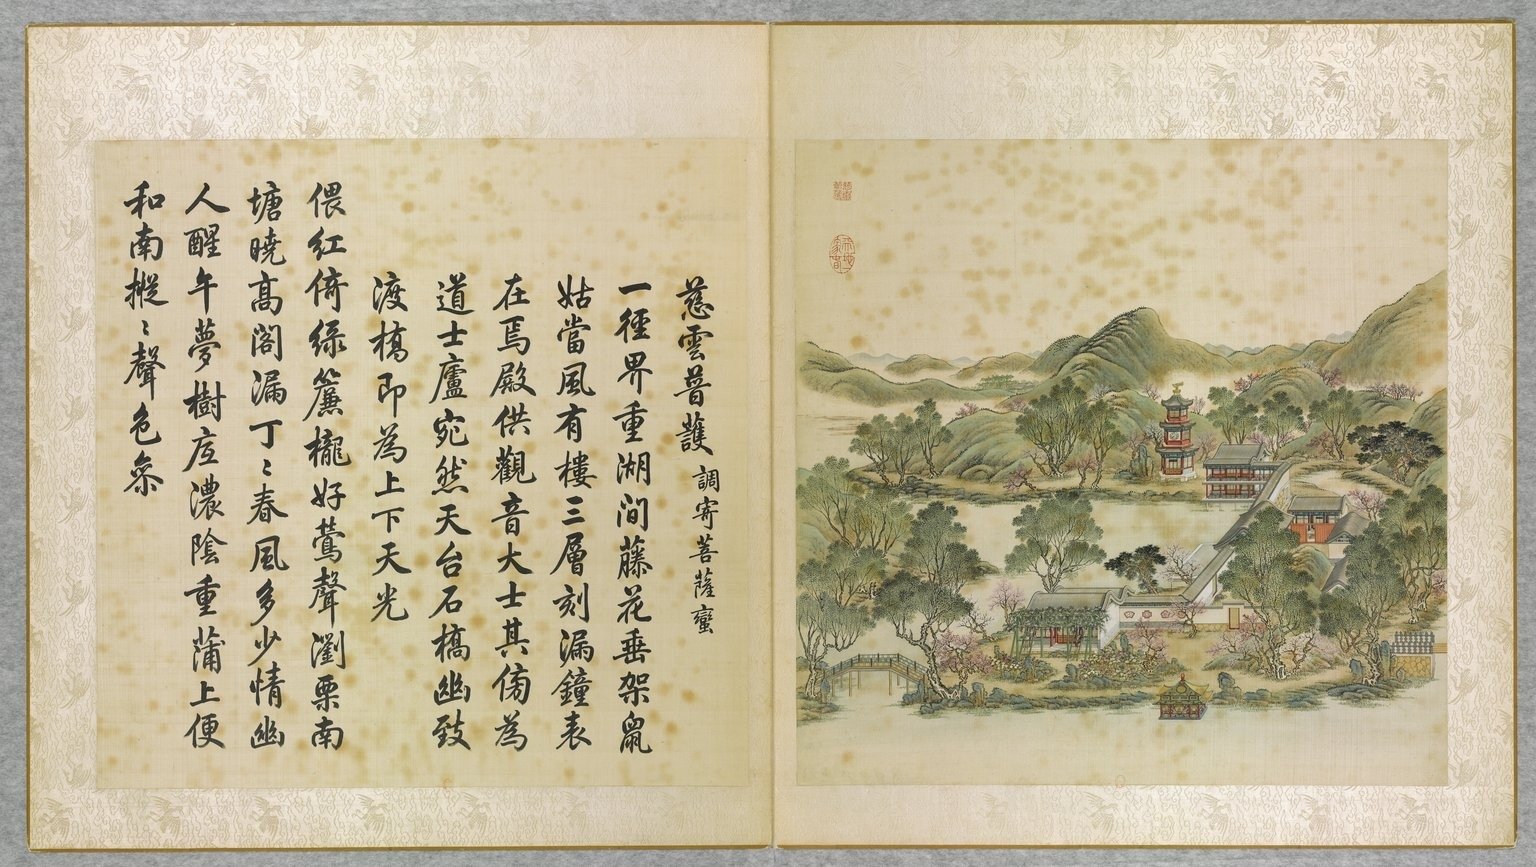 Le jardin de la Clarté parfaite, peinture de Tang Dai et Shen Yuan, en regard, poème de l'empereur Qianlong, calligraphié par Wang Youdun